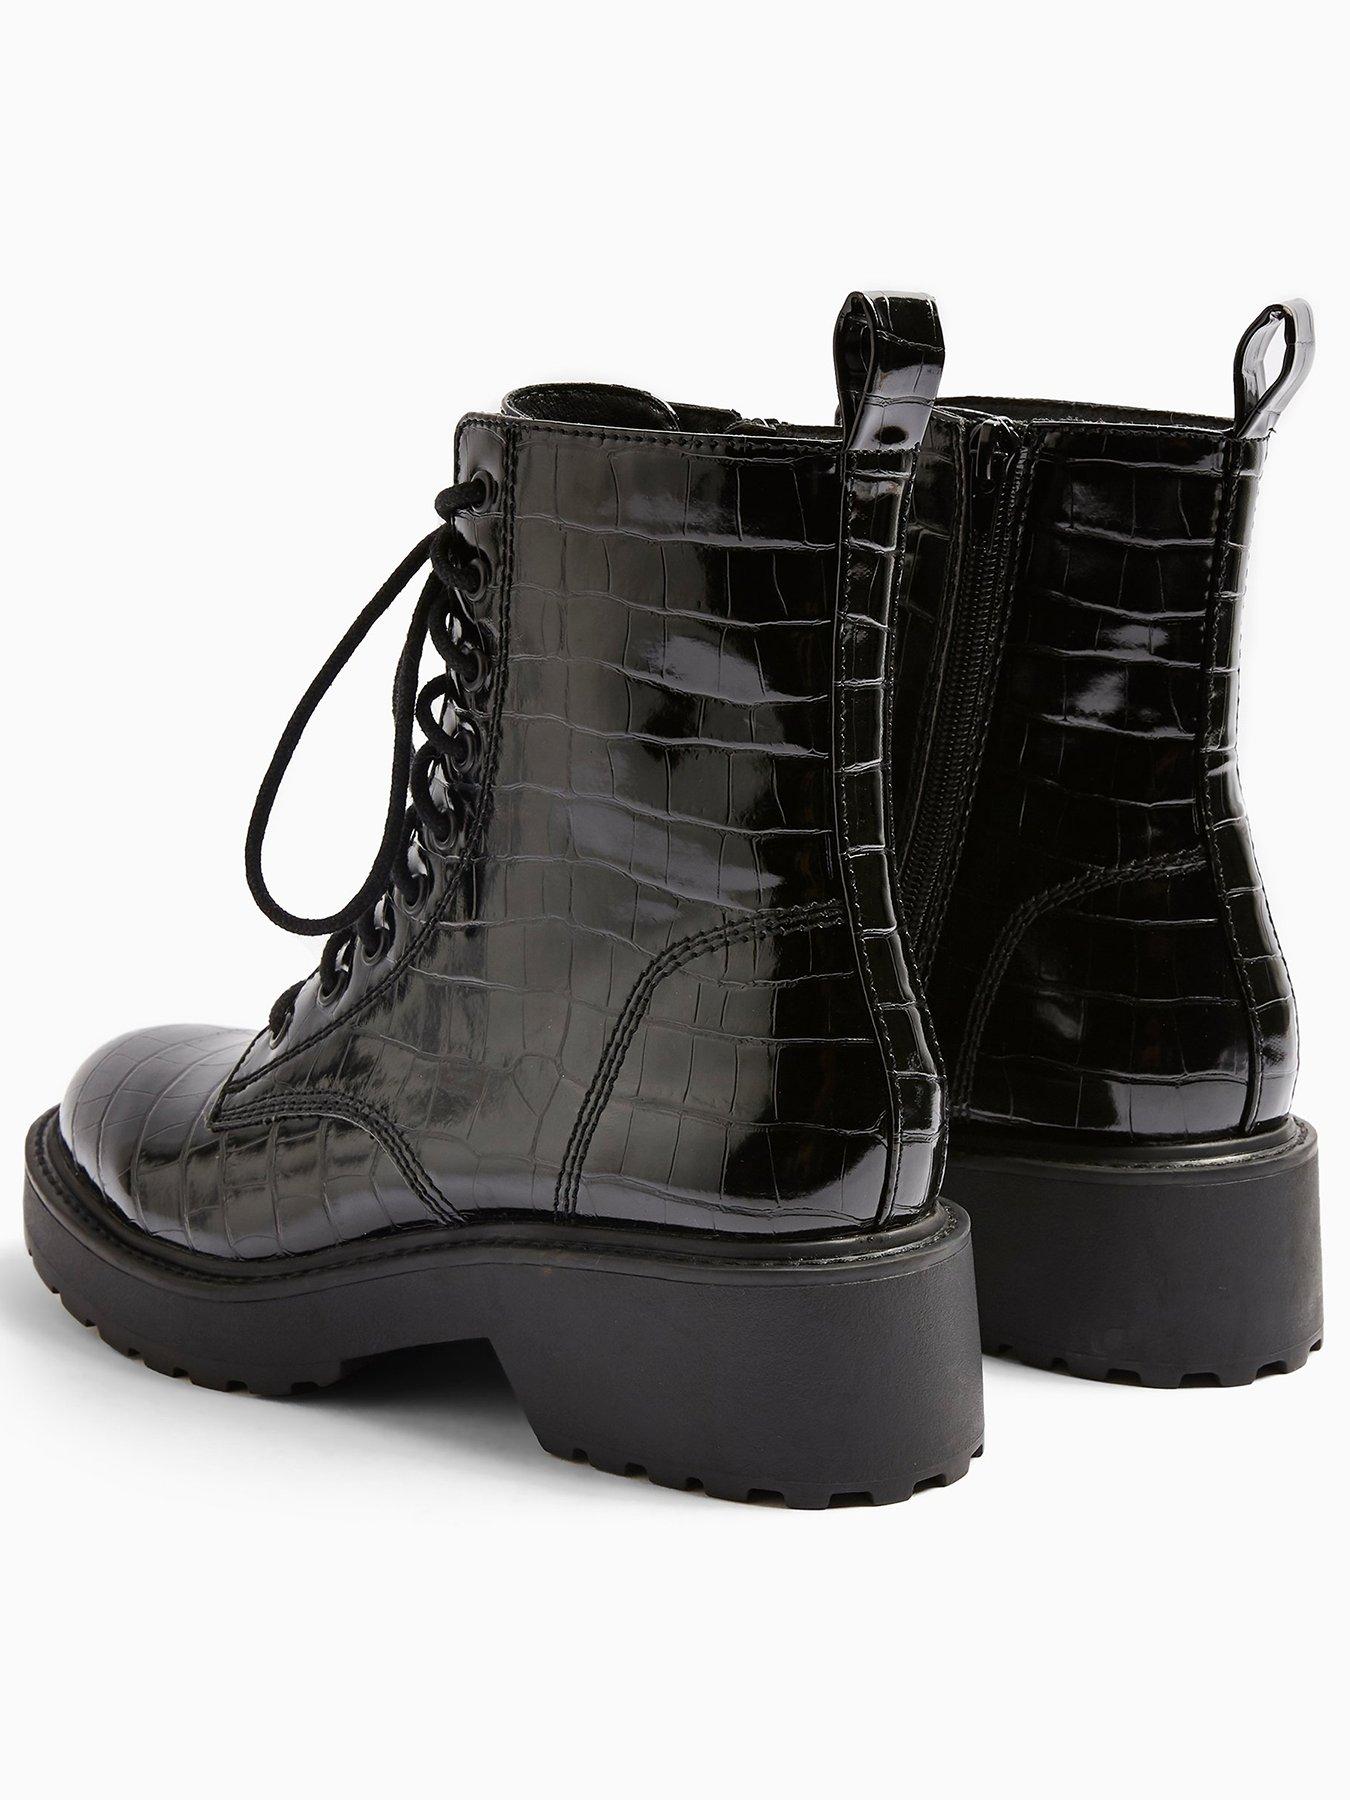 topshop black croc boots